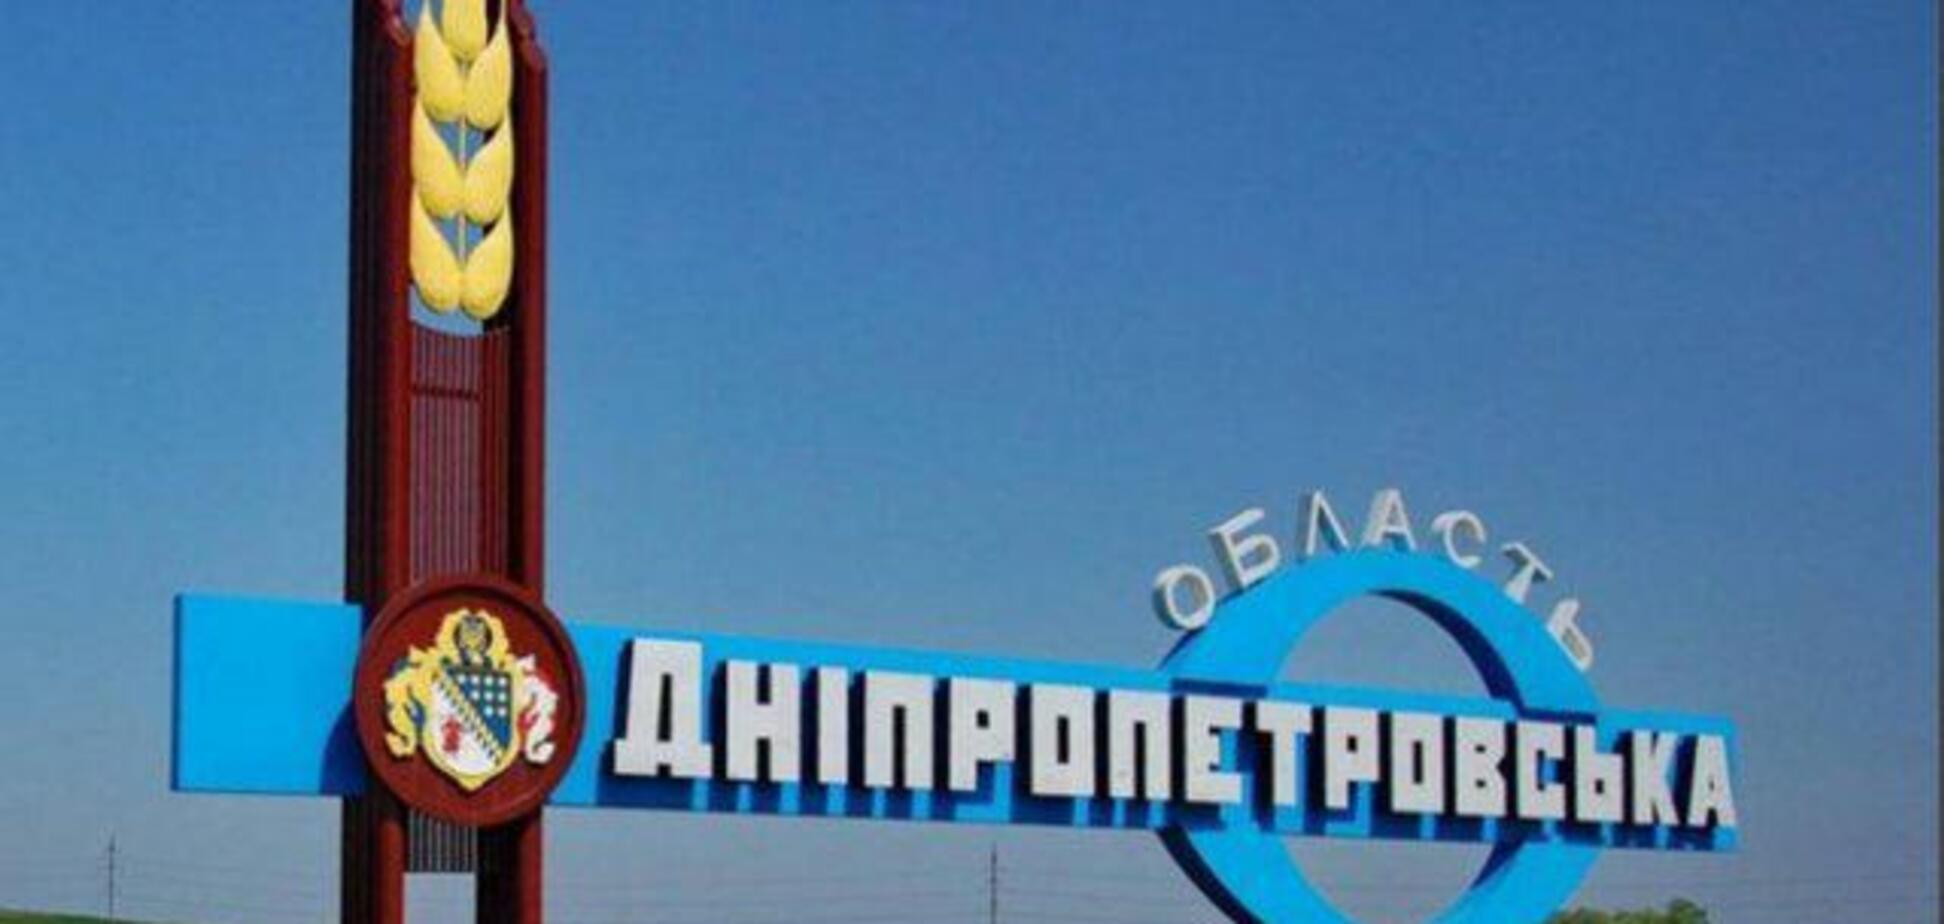 Ситуація у Дніпропетровській області спокійна, продукти та медикаменти є – голова ОДА